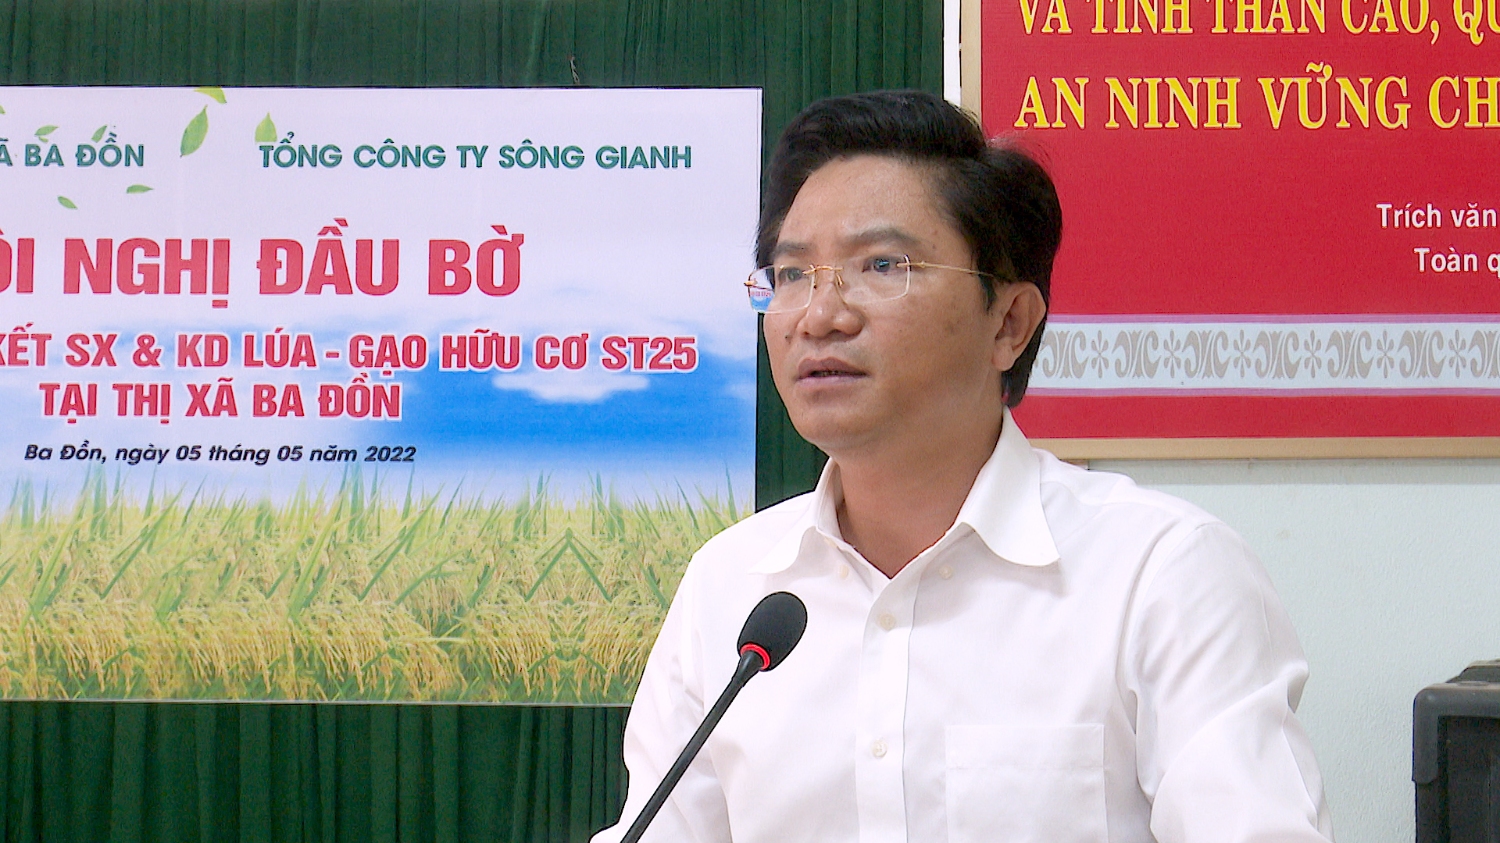 Đồng chí Trương An Ninh, Ủy viên Ban Thường vụ Tỉnh ủy, Bí thư thị ủy Ba Đồn phát biểu kết luận tại hội nghị